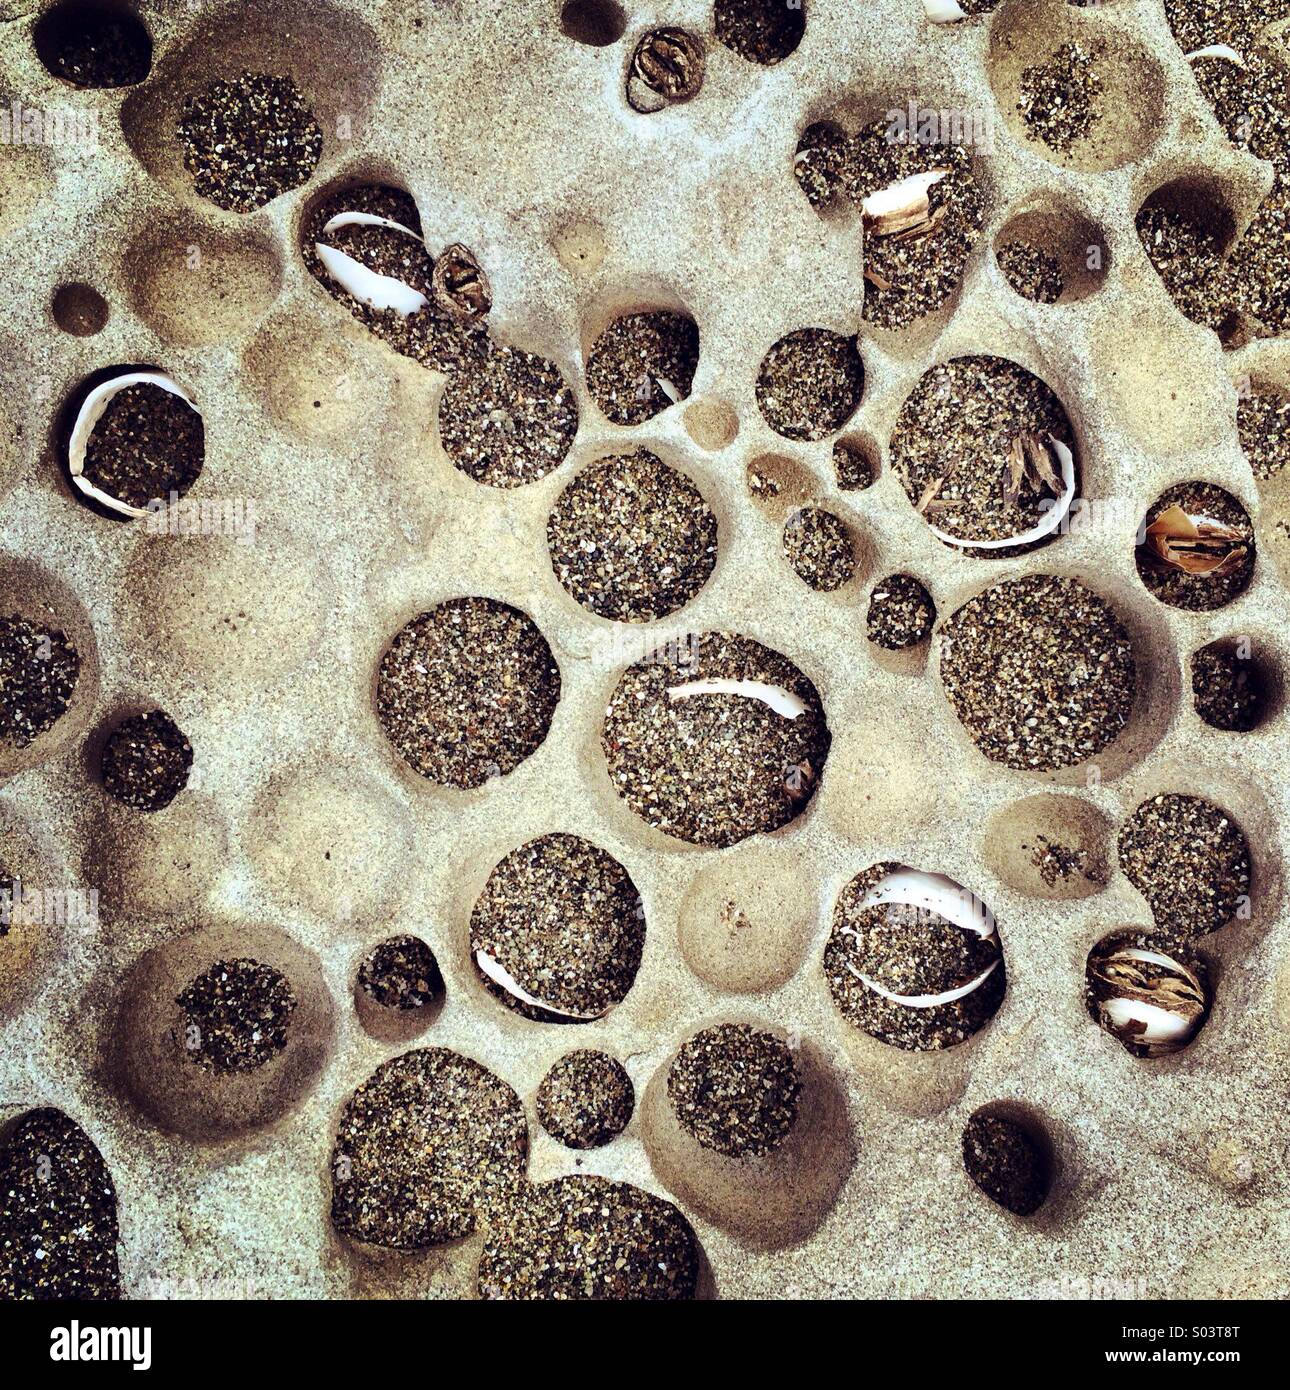 Piddock clam burrows in rock, low tide, Shi-Shi Beach, Olympic National Park, Washington Stock Photo